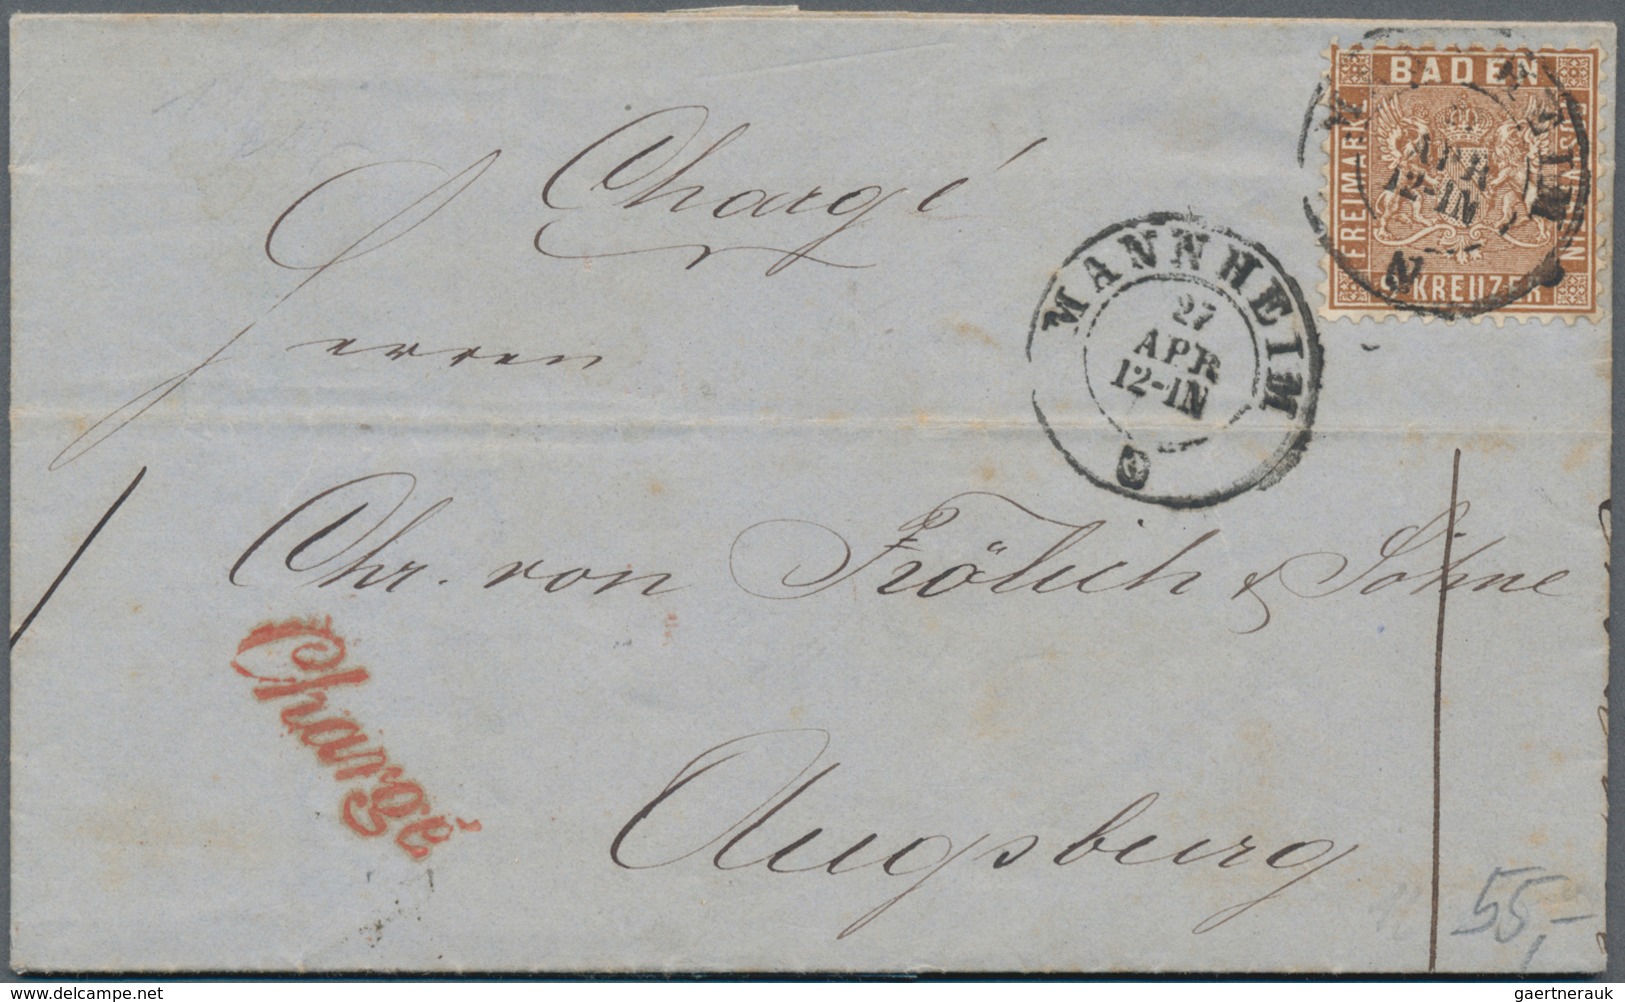 Baden - Marken und Briefe: ab ca. 1900, herrlicher Posten von rund 100 frankierten Belegen, dabei ei